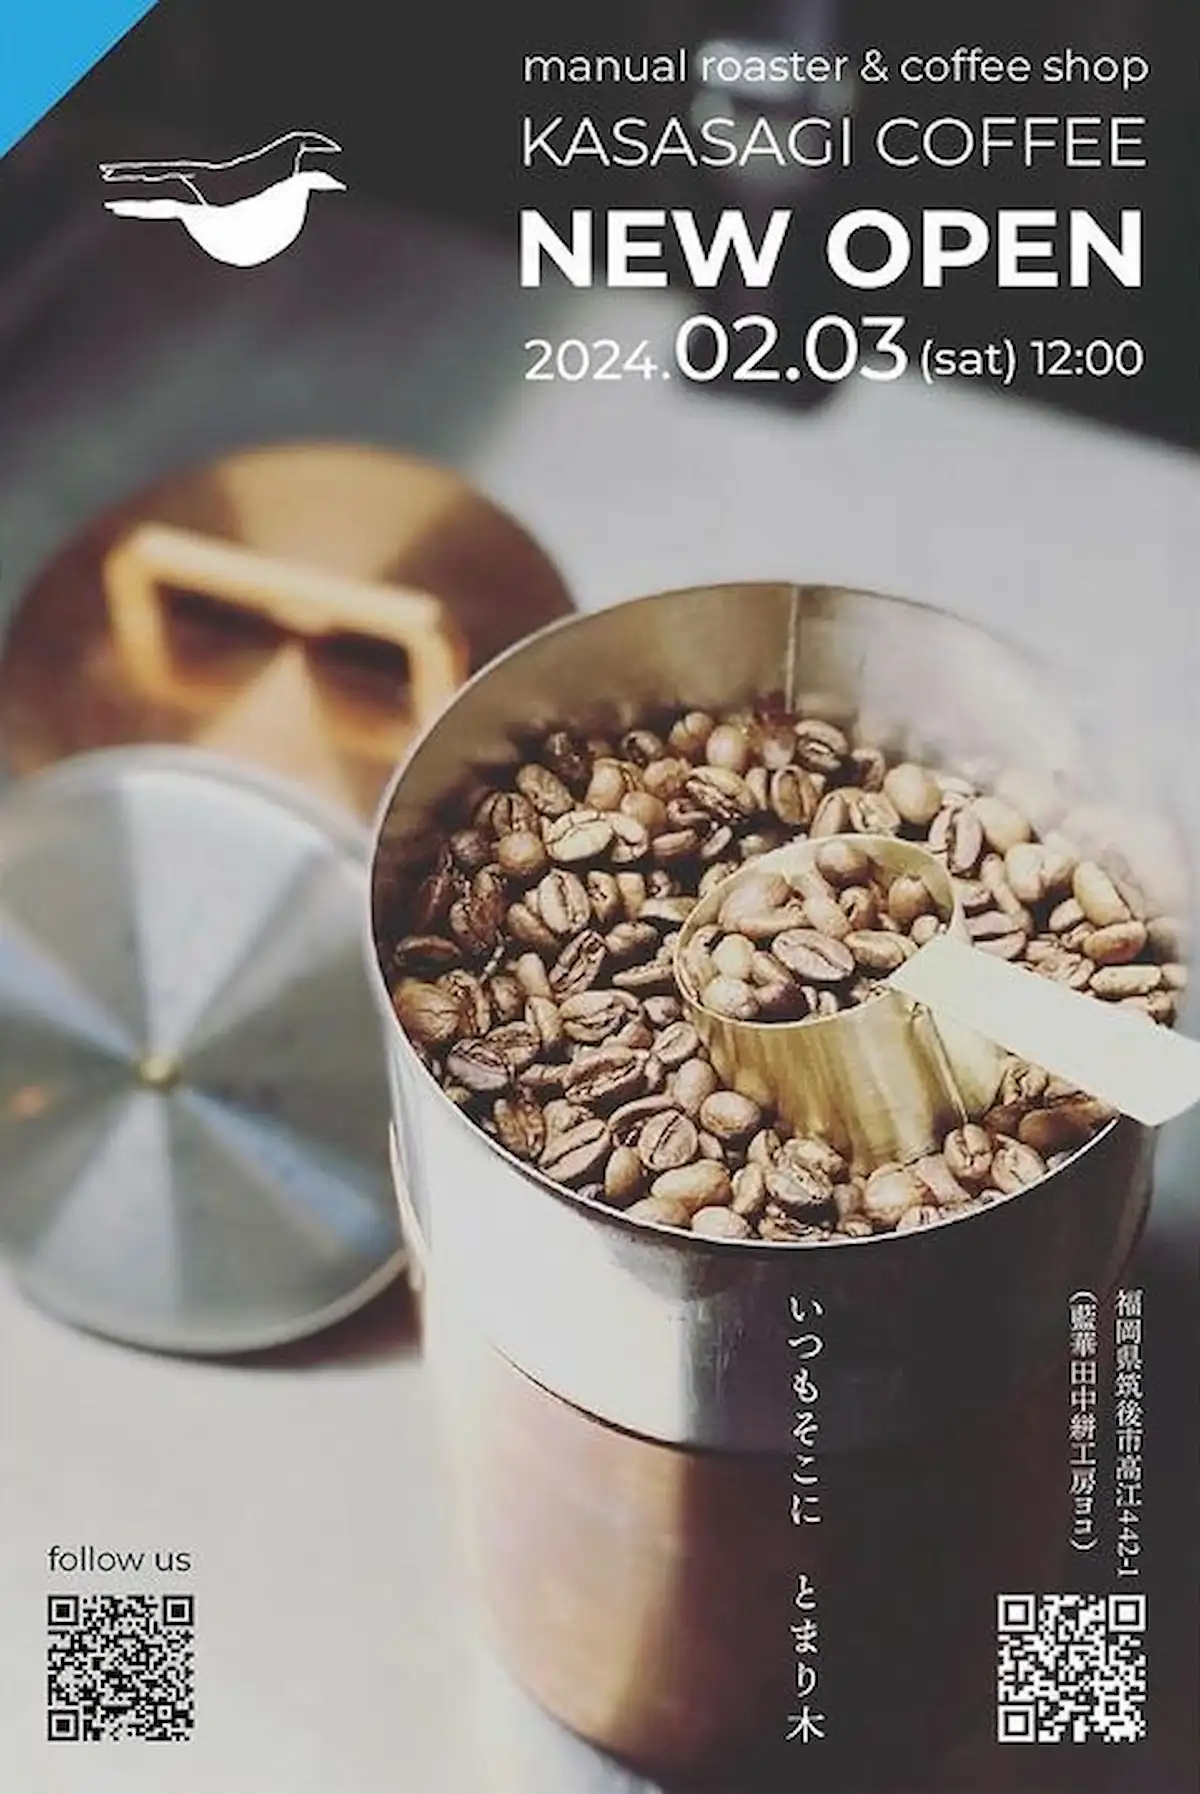 鵲珈琲（KASASAGI COFFEE）が2月3日にオープンするみたい。こだわりの一杯を味わえるお店（筑後市）